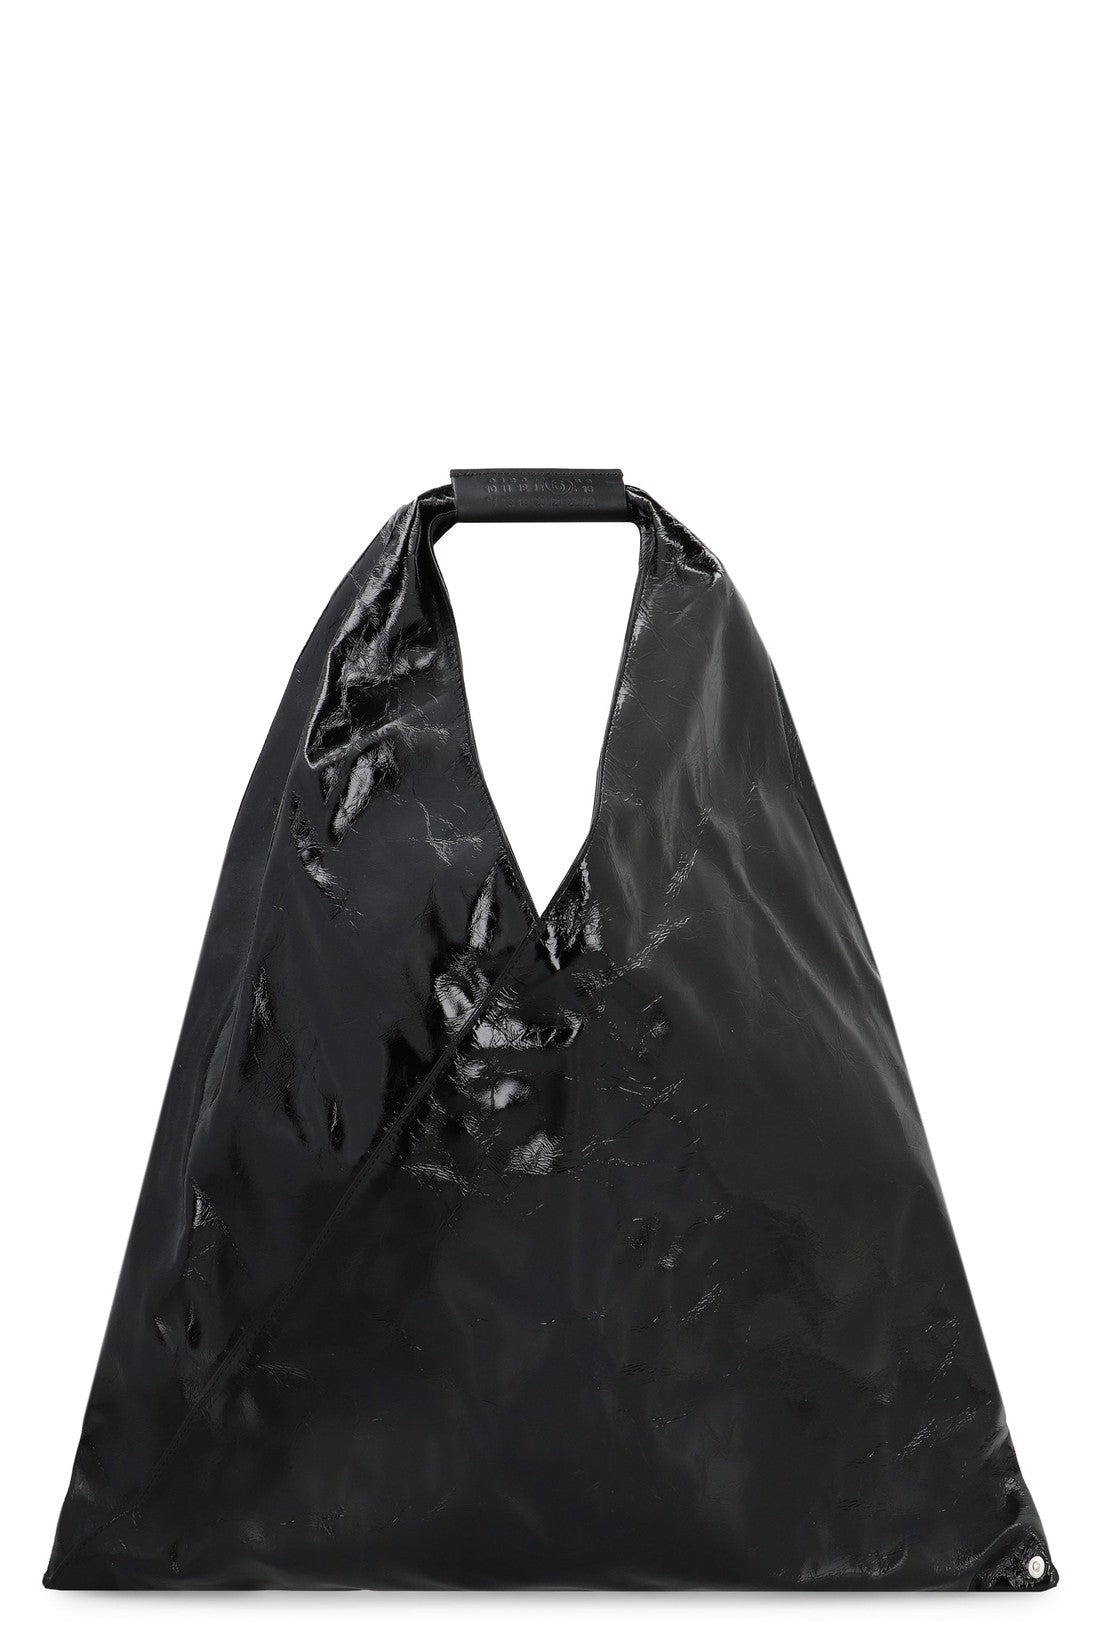 MM6 Maison Margiela-OUTLET-SALE-Japanese leather bag-ARCHIVIST